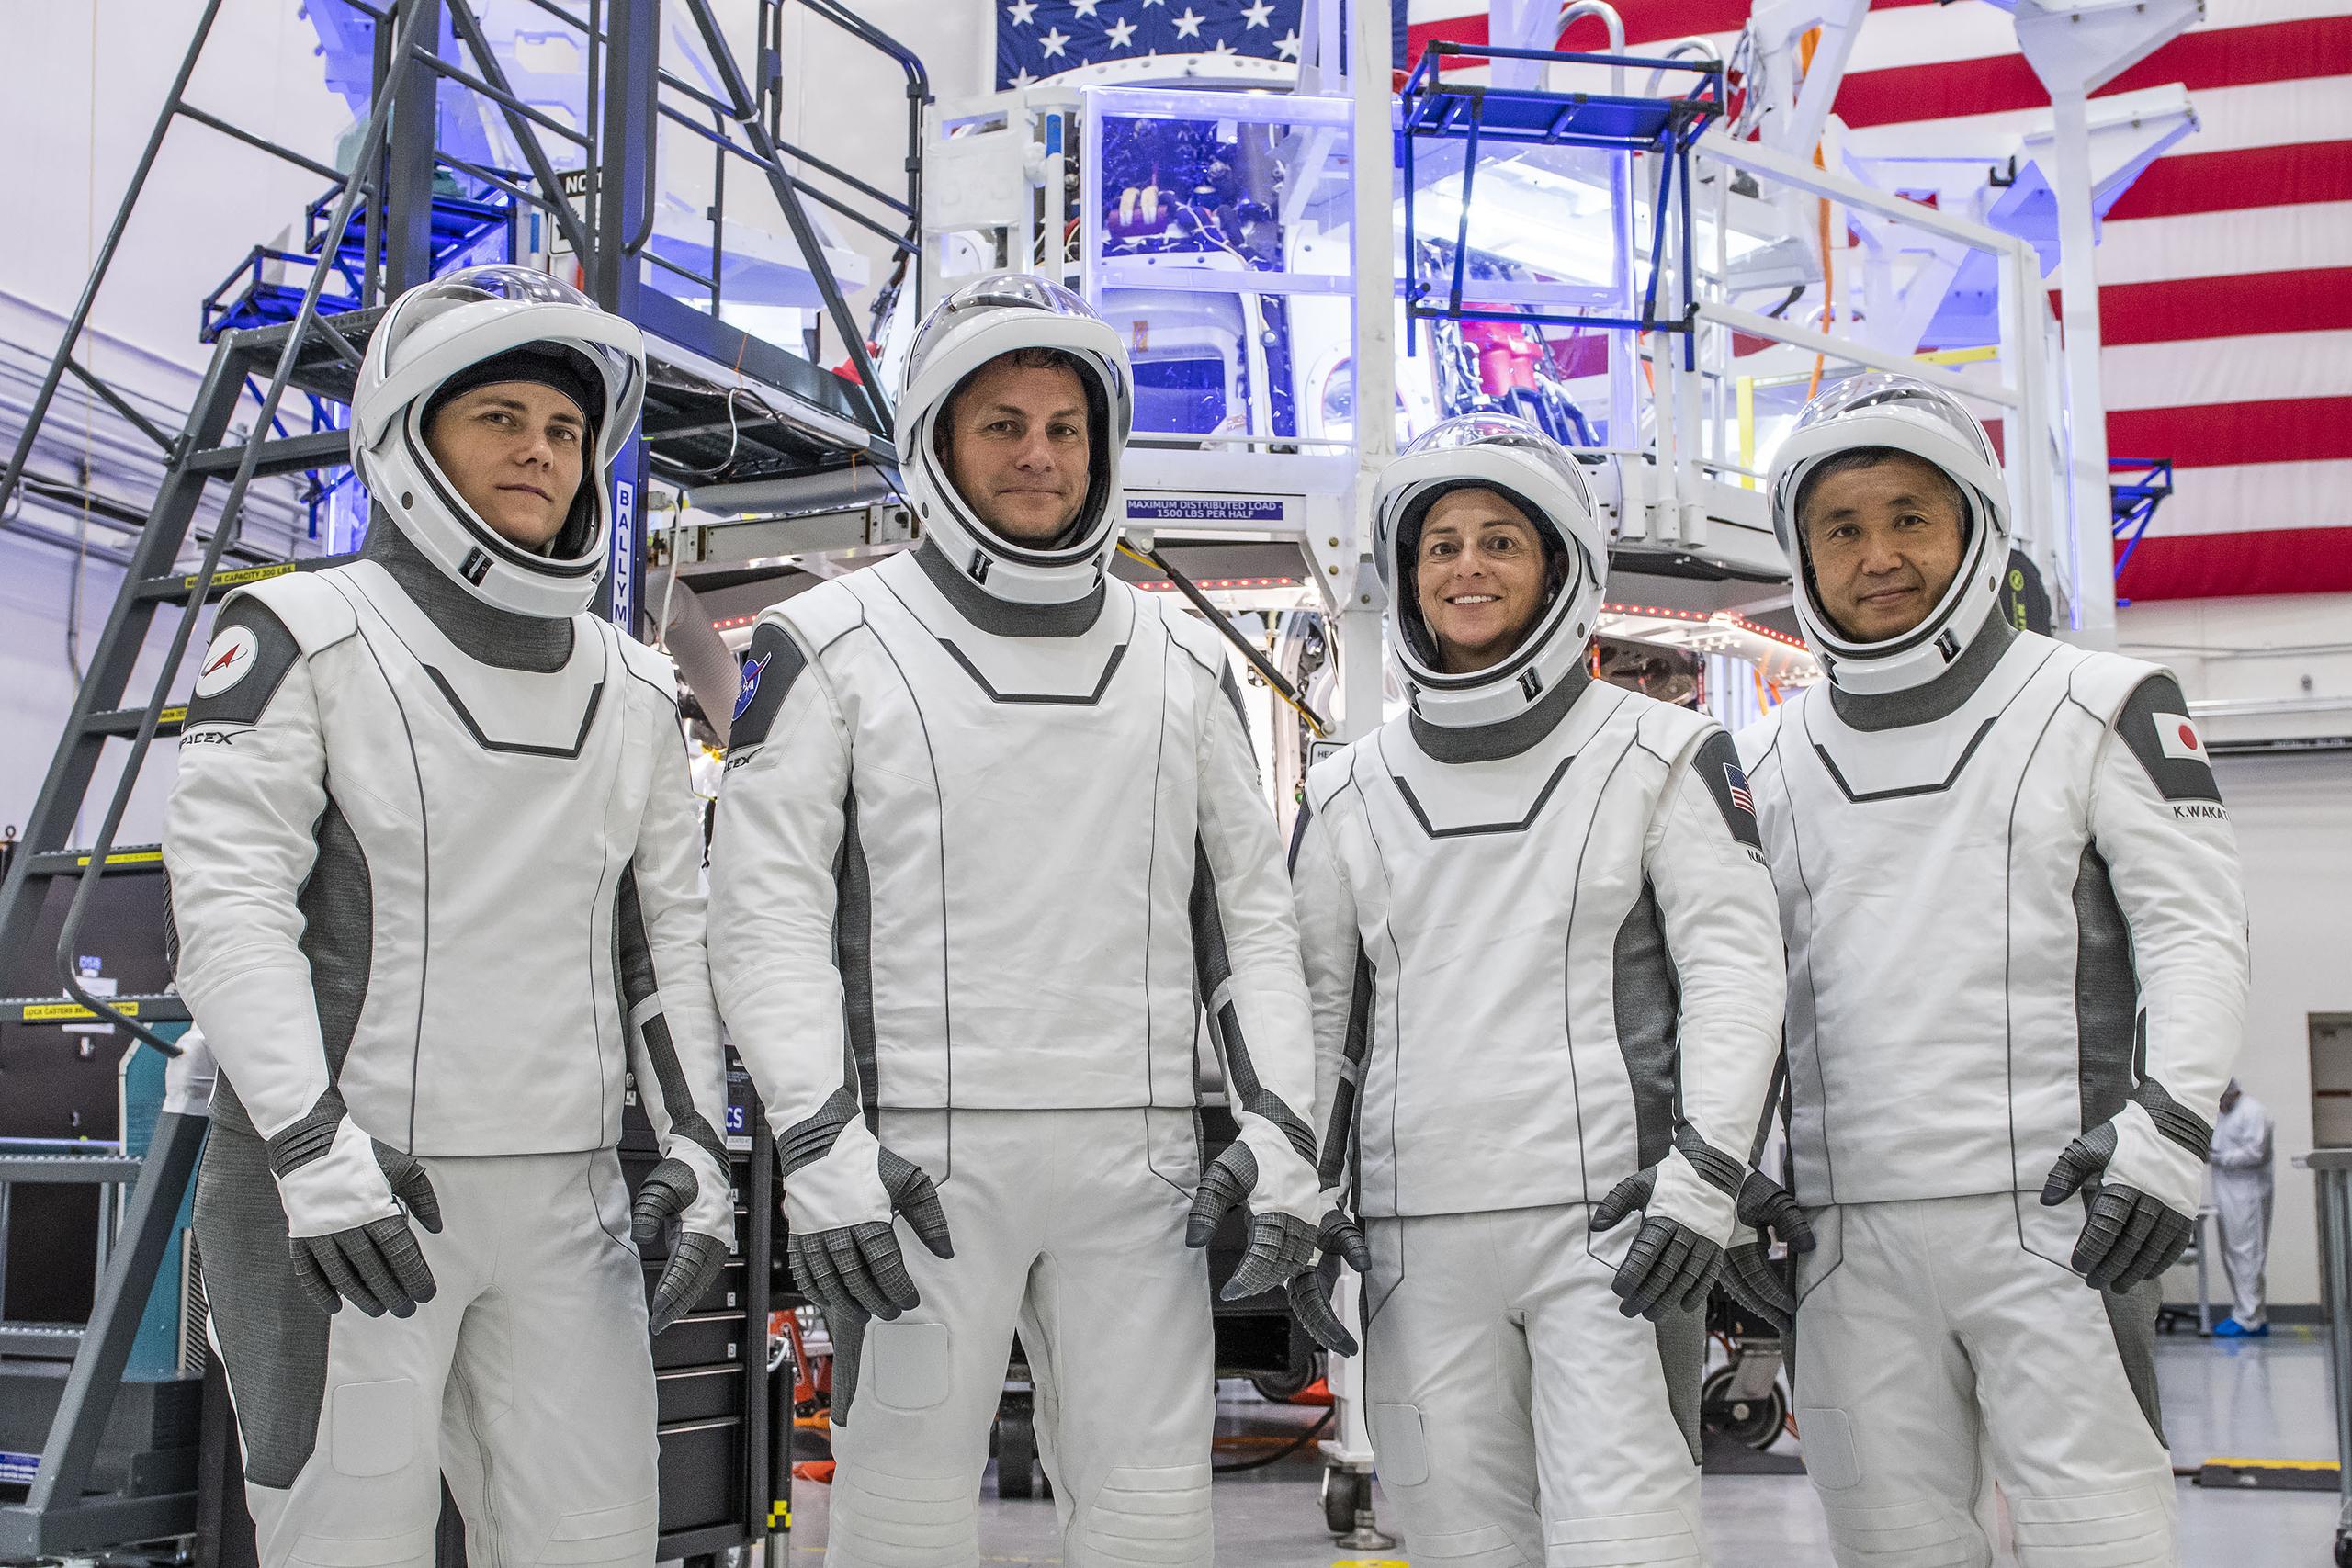 Con el lanzamiento de hoy, SpaceX ha logrado llevar a 30 personas al espacio, un “hito importante” para el programa de vuelos espaciales tripulados de la compañía, señaló Sarah Walker, directora de gestiones de la misión Dragon.